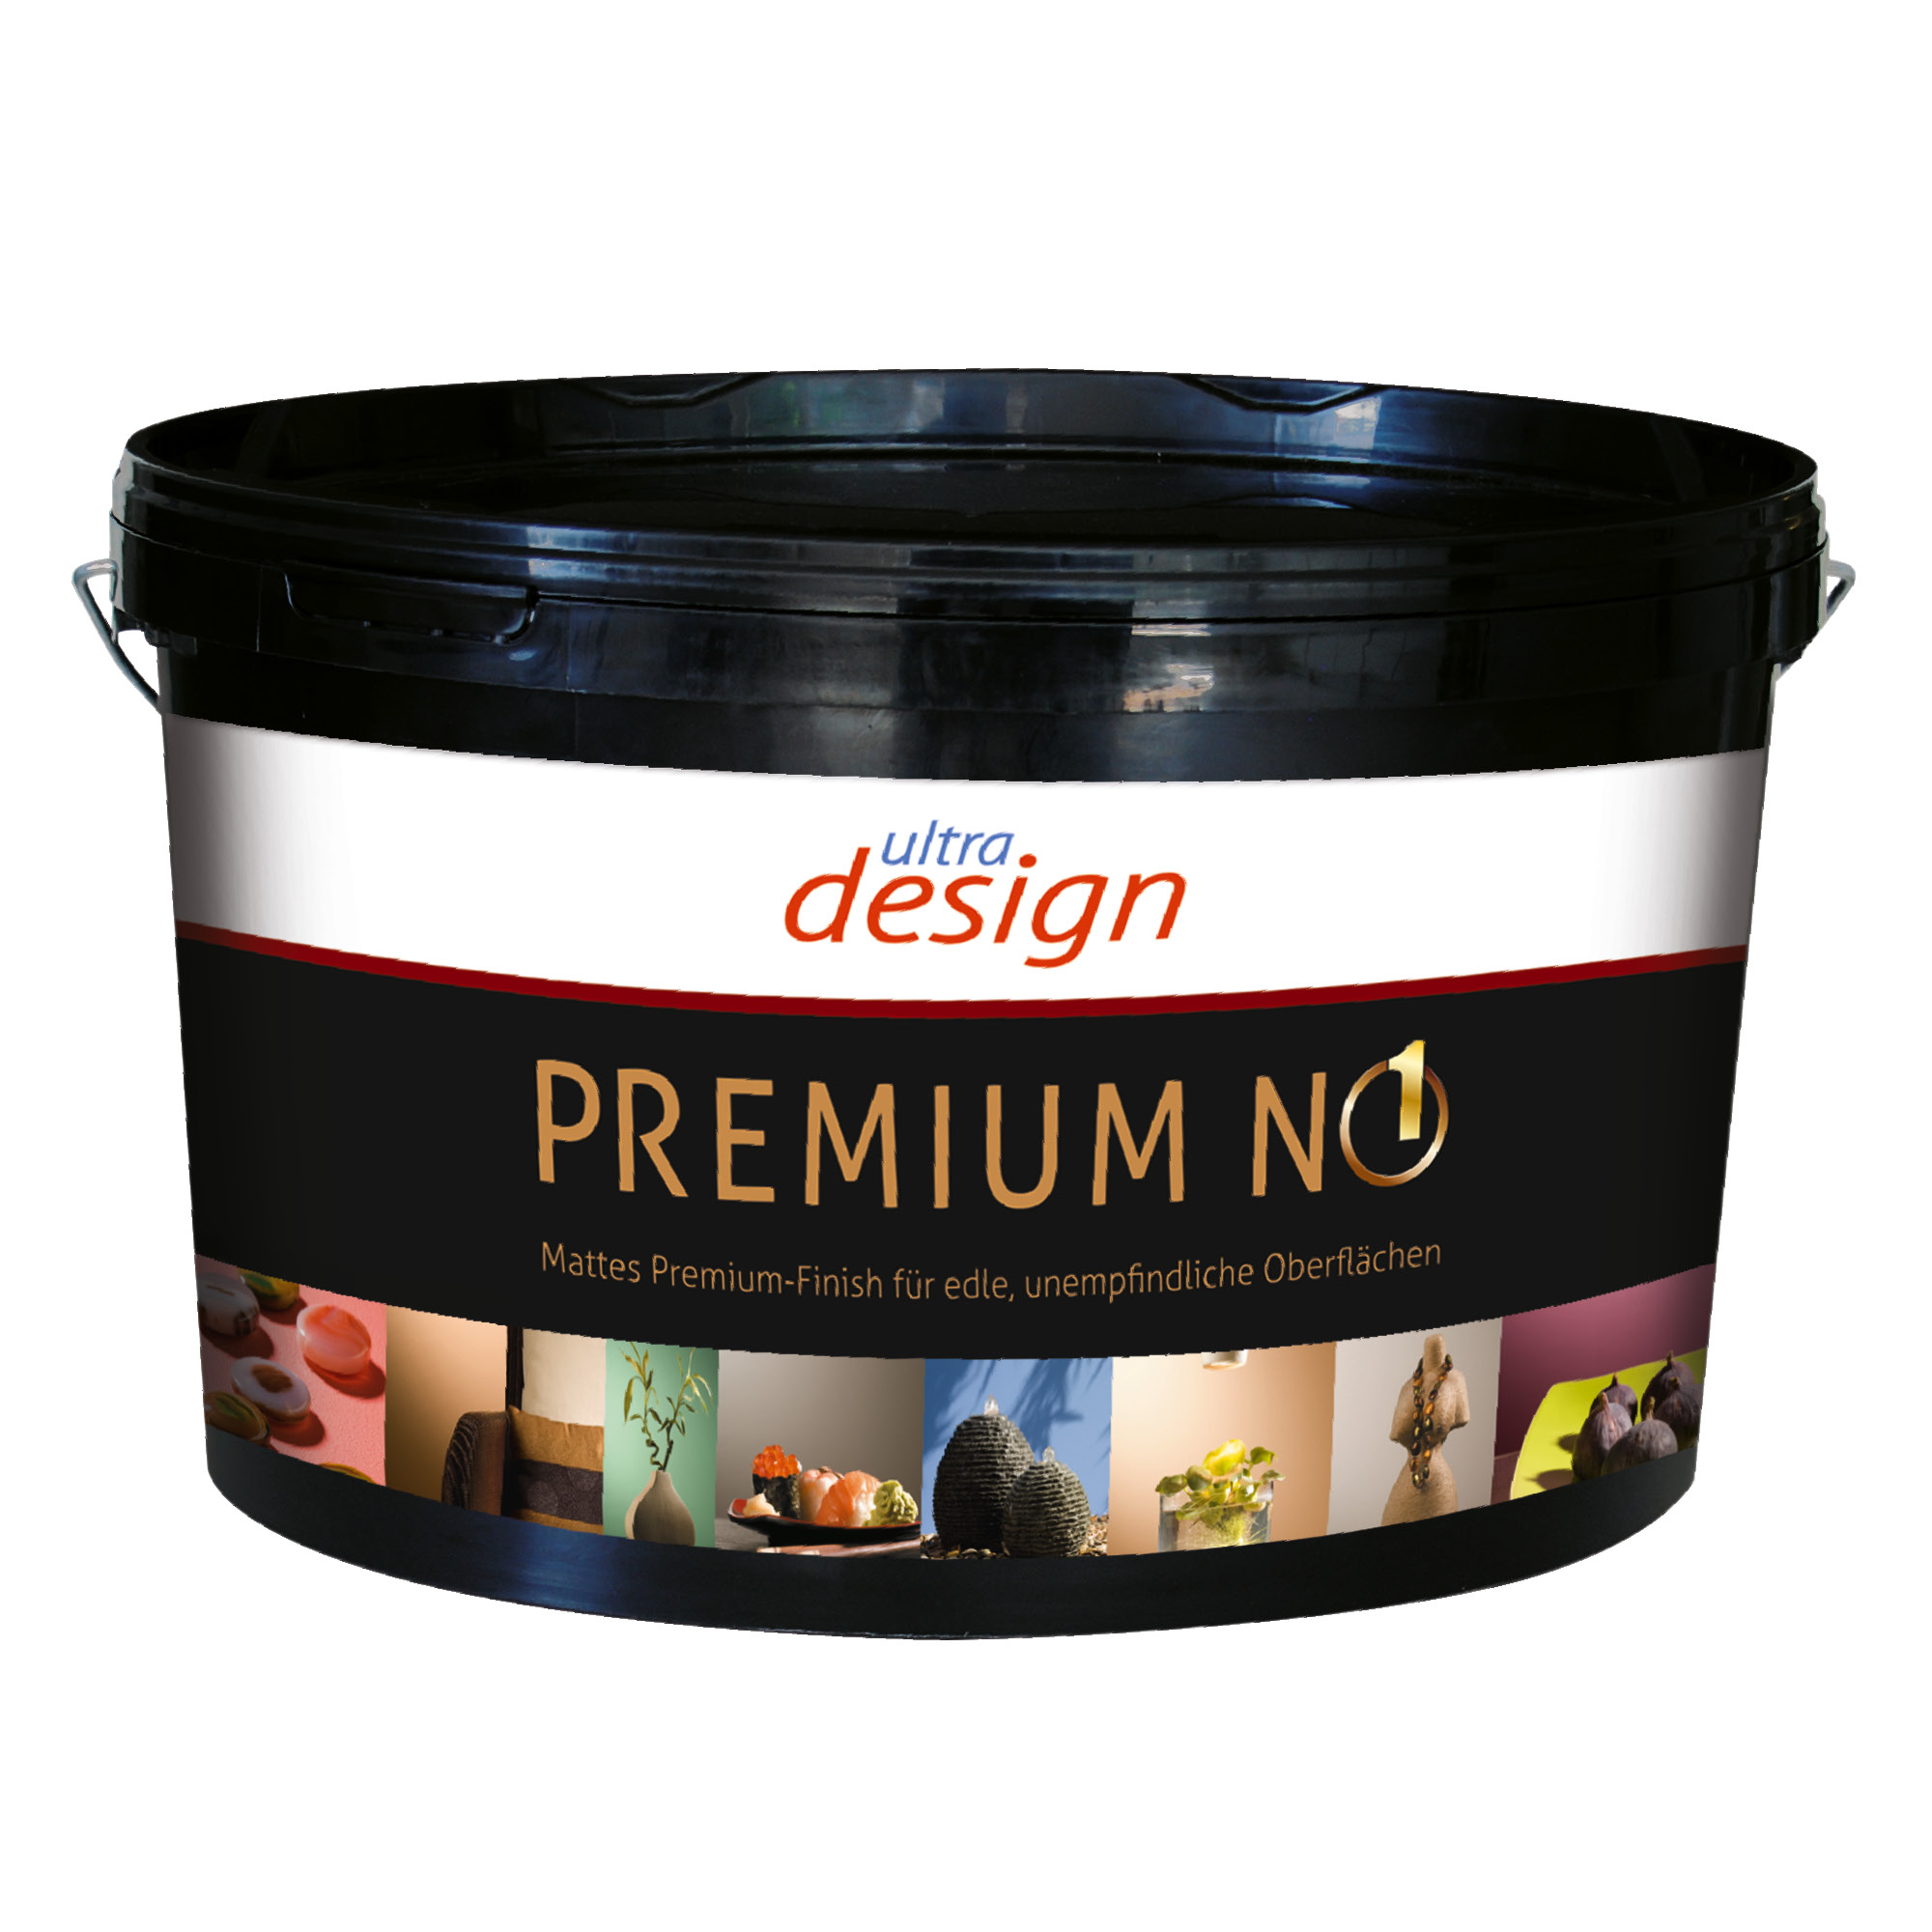 Imparat Ultra design Premium No 1